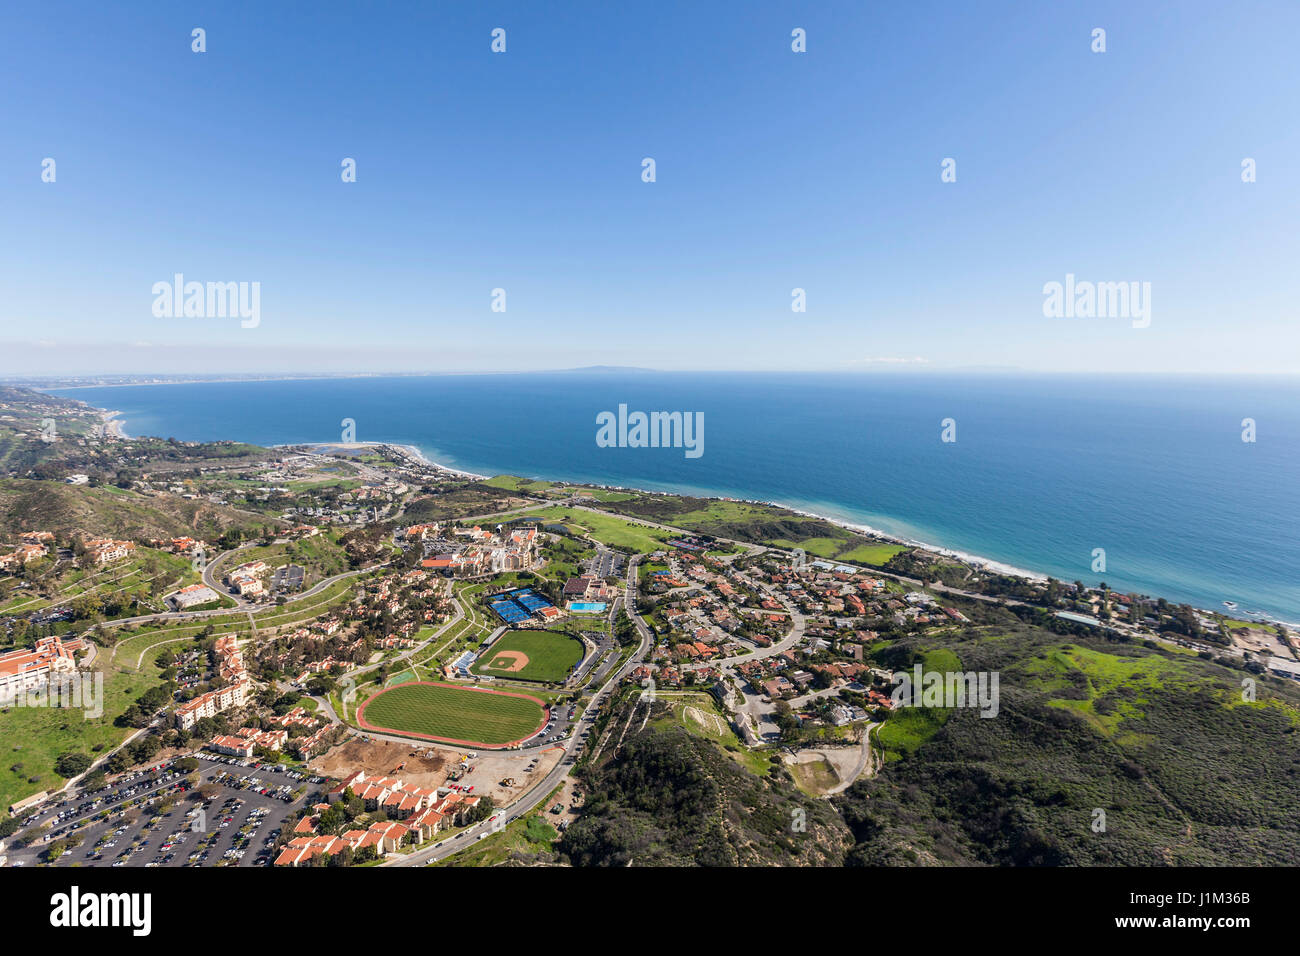 Vue aérienne de Malibu et la baie de Santa Monica, près de Los Angeles, Californie. Banque D'Images